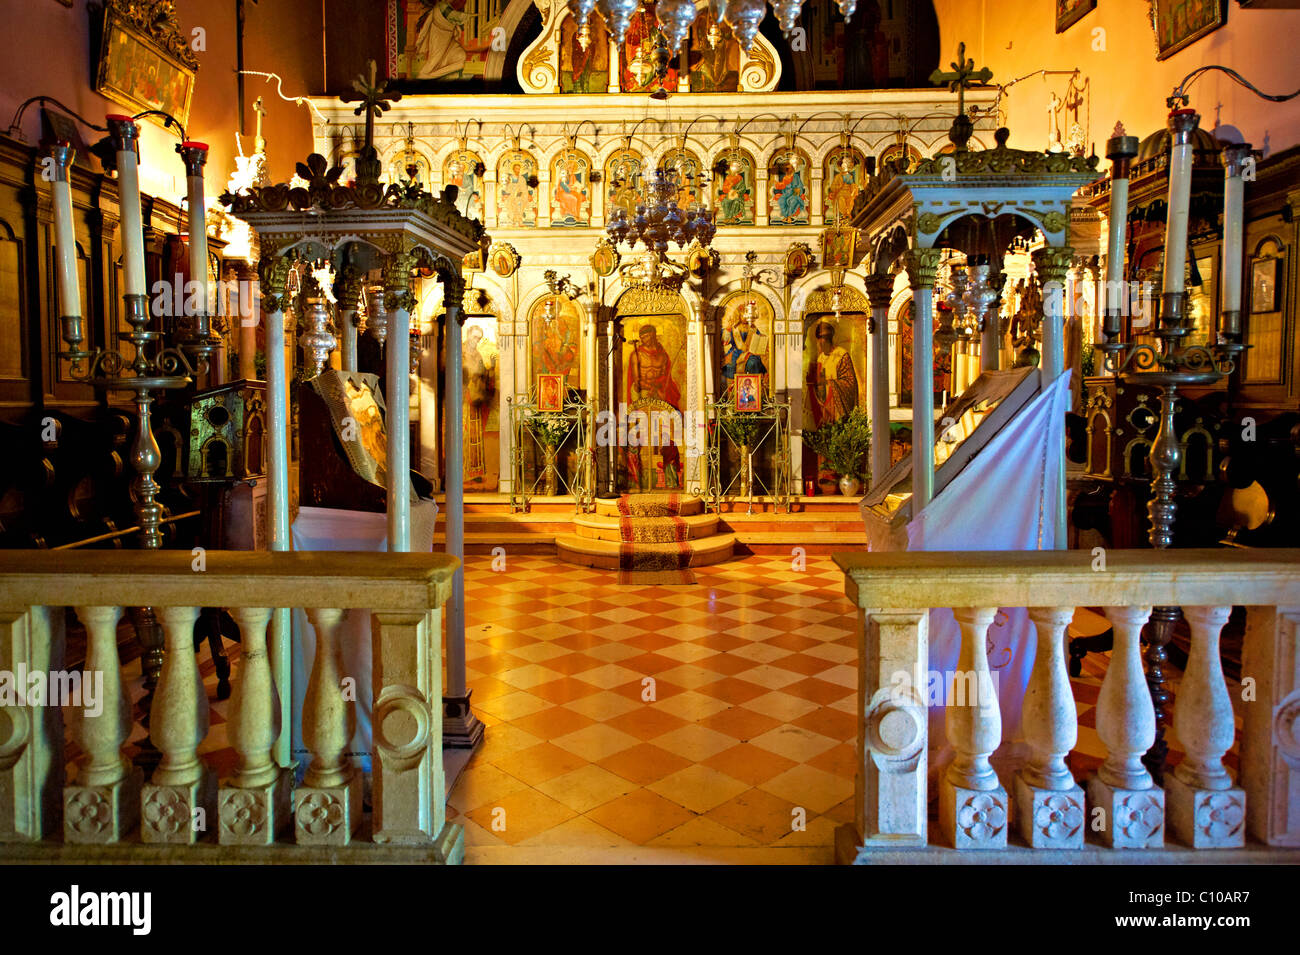 Innenraum der Theotokos, Kloster, Paleokastitsa, 18. Jahrhundert Griechisch Orthodox. Ionischen Insel Korfu, Griechenland Stockfoto